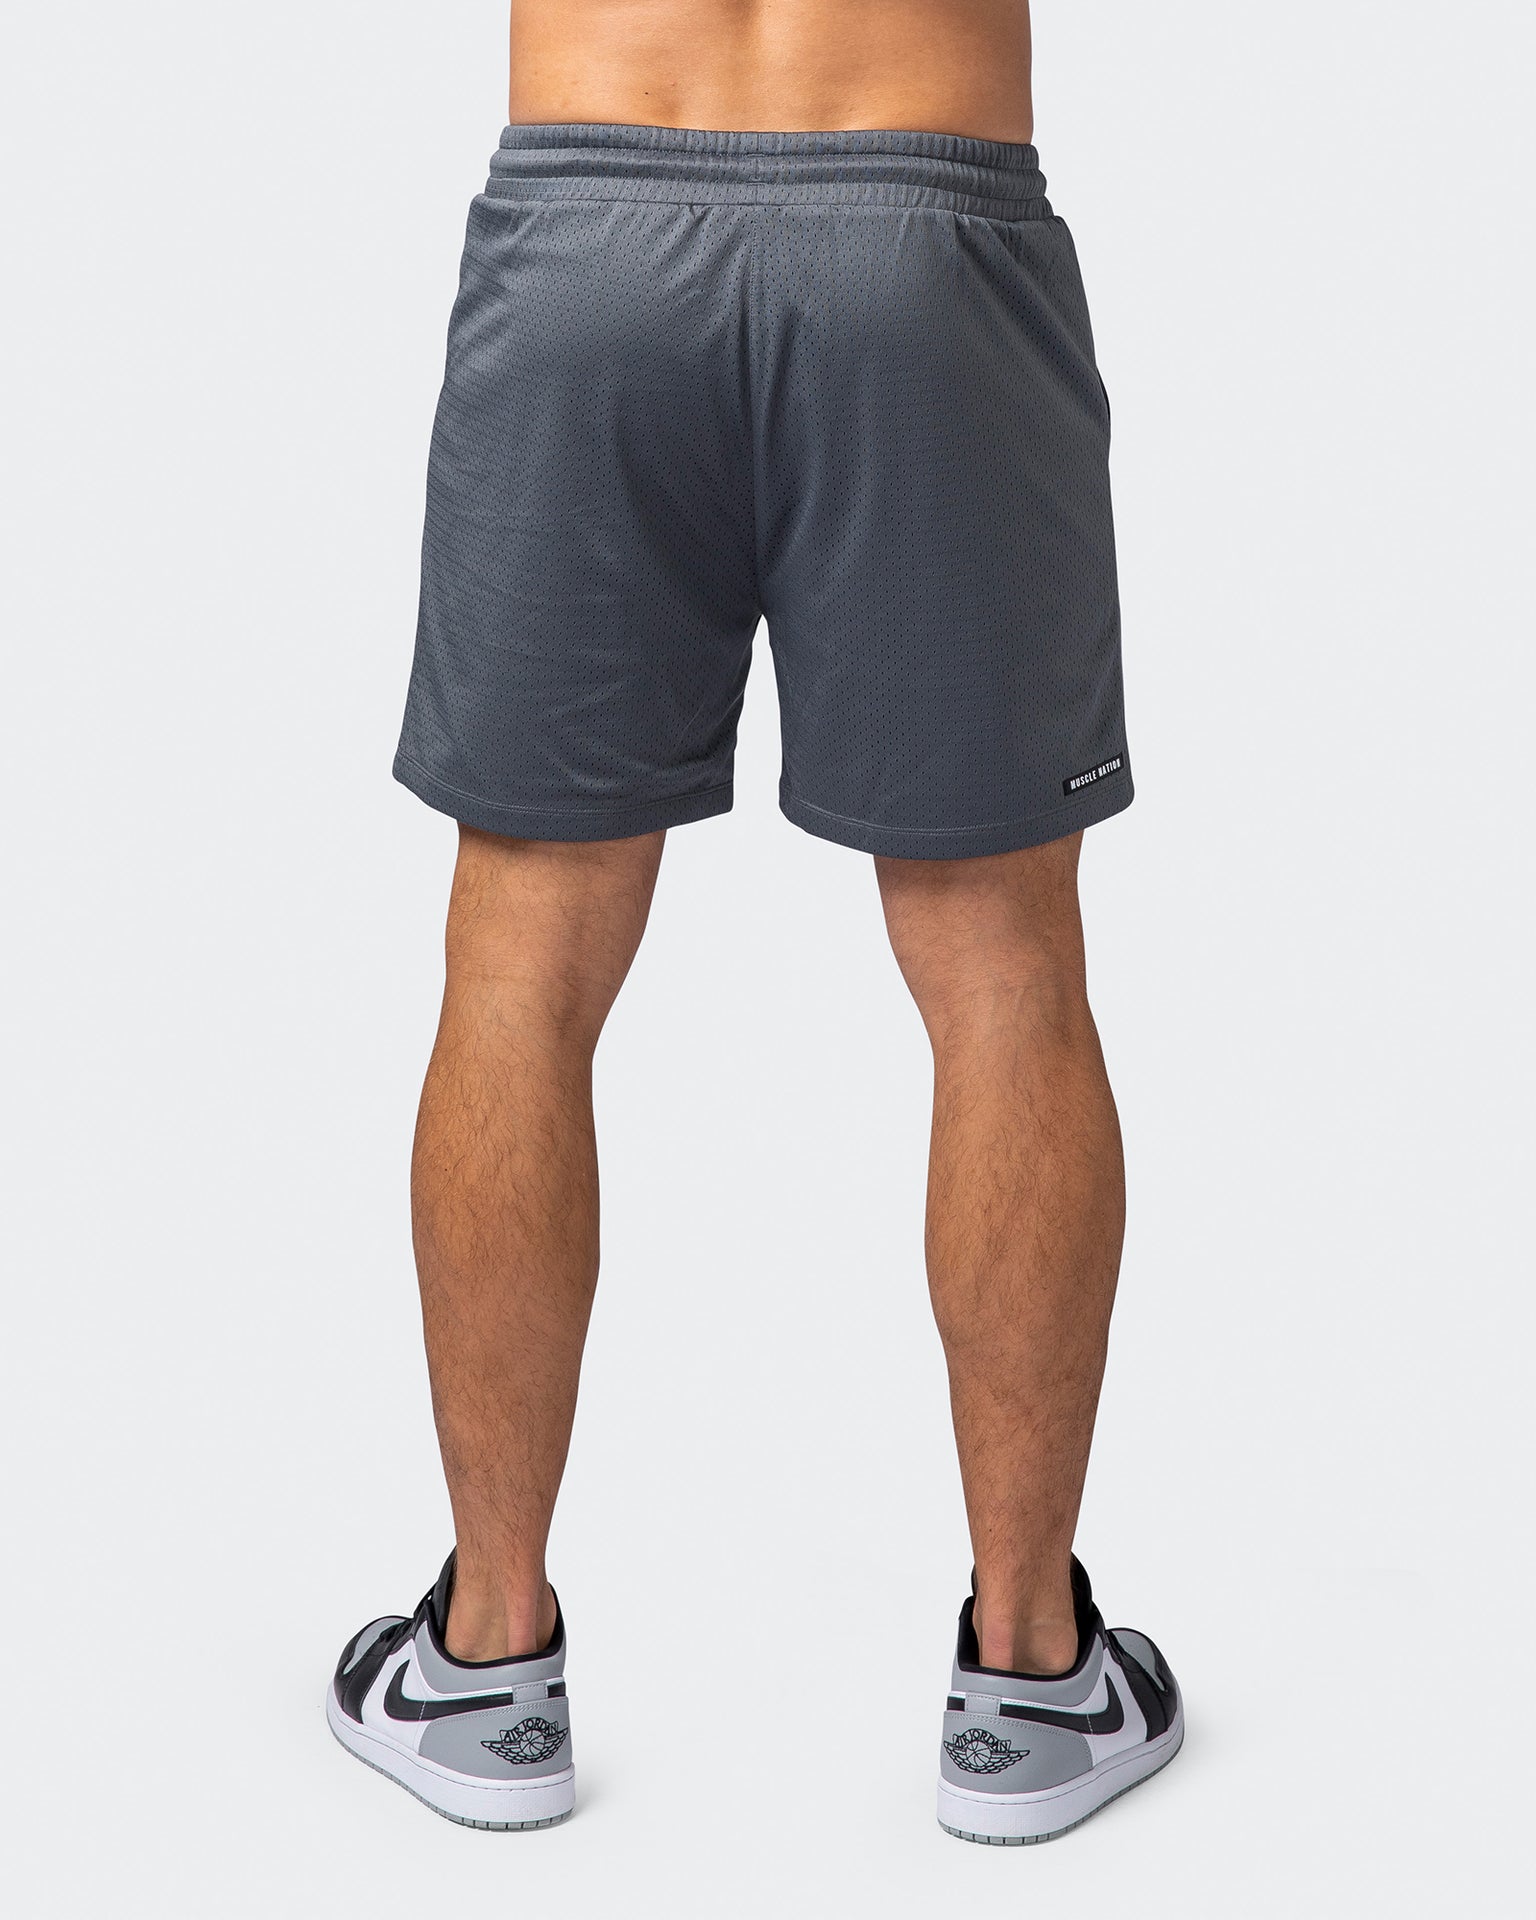 musclenation Gym Shorts Lay Up 5" Shorts - Tornado